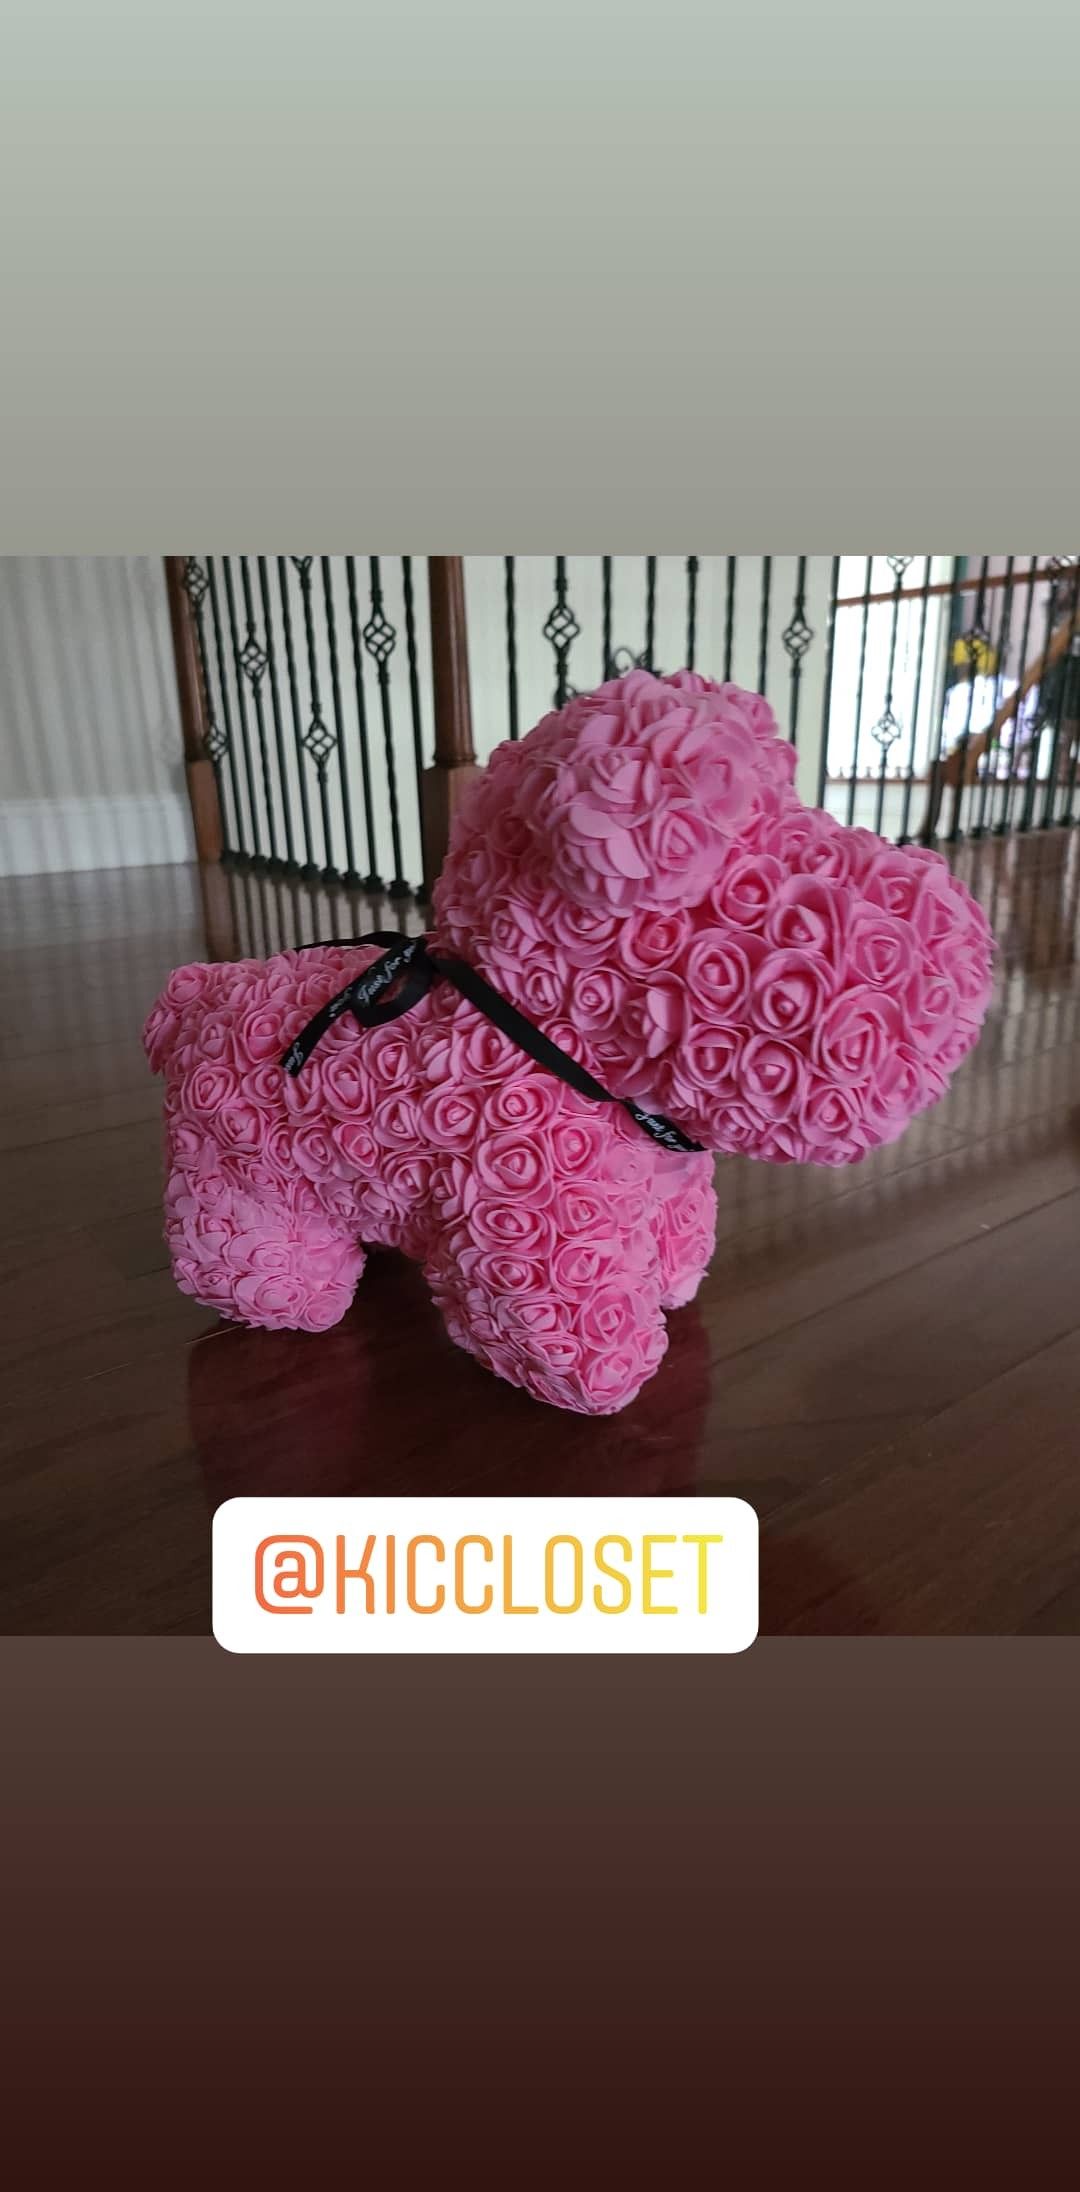 Rose dog pink